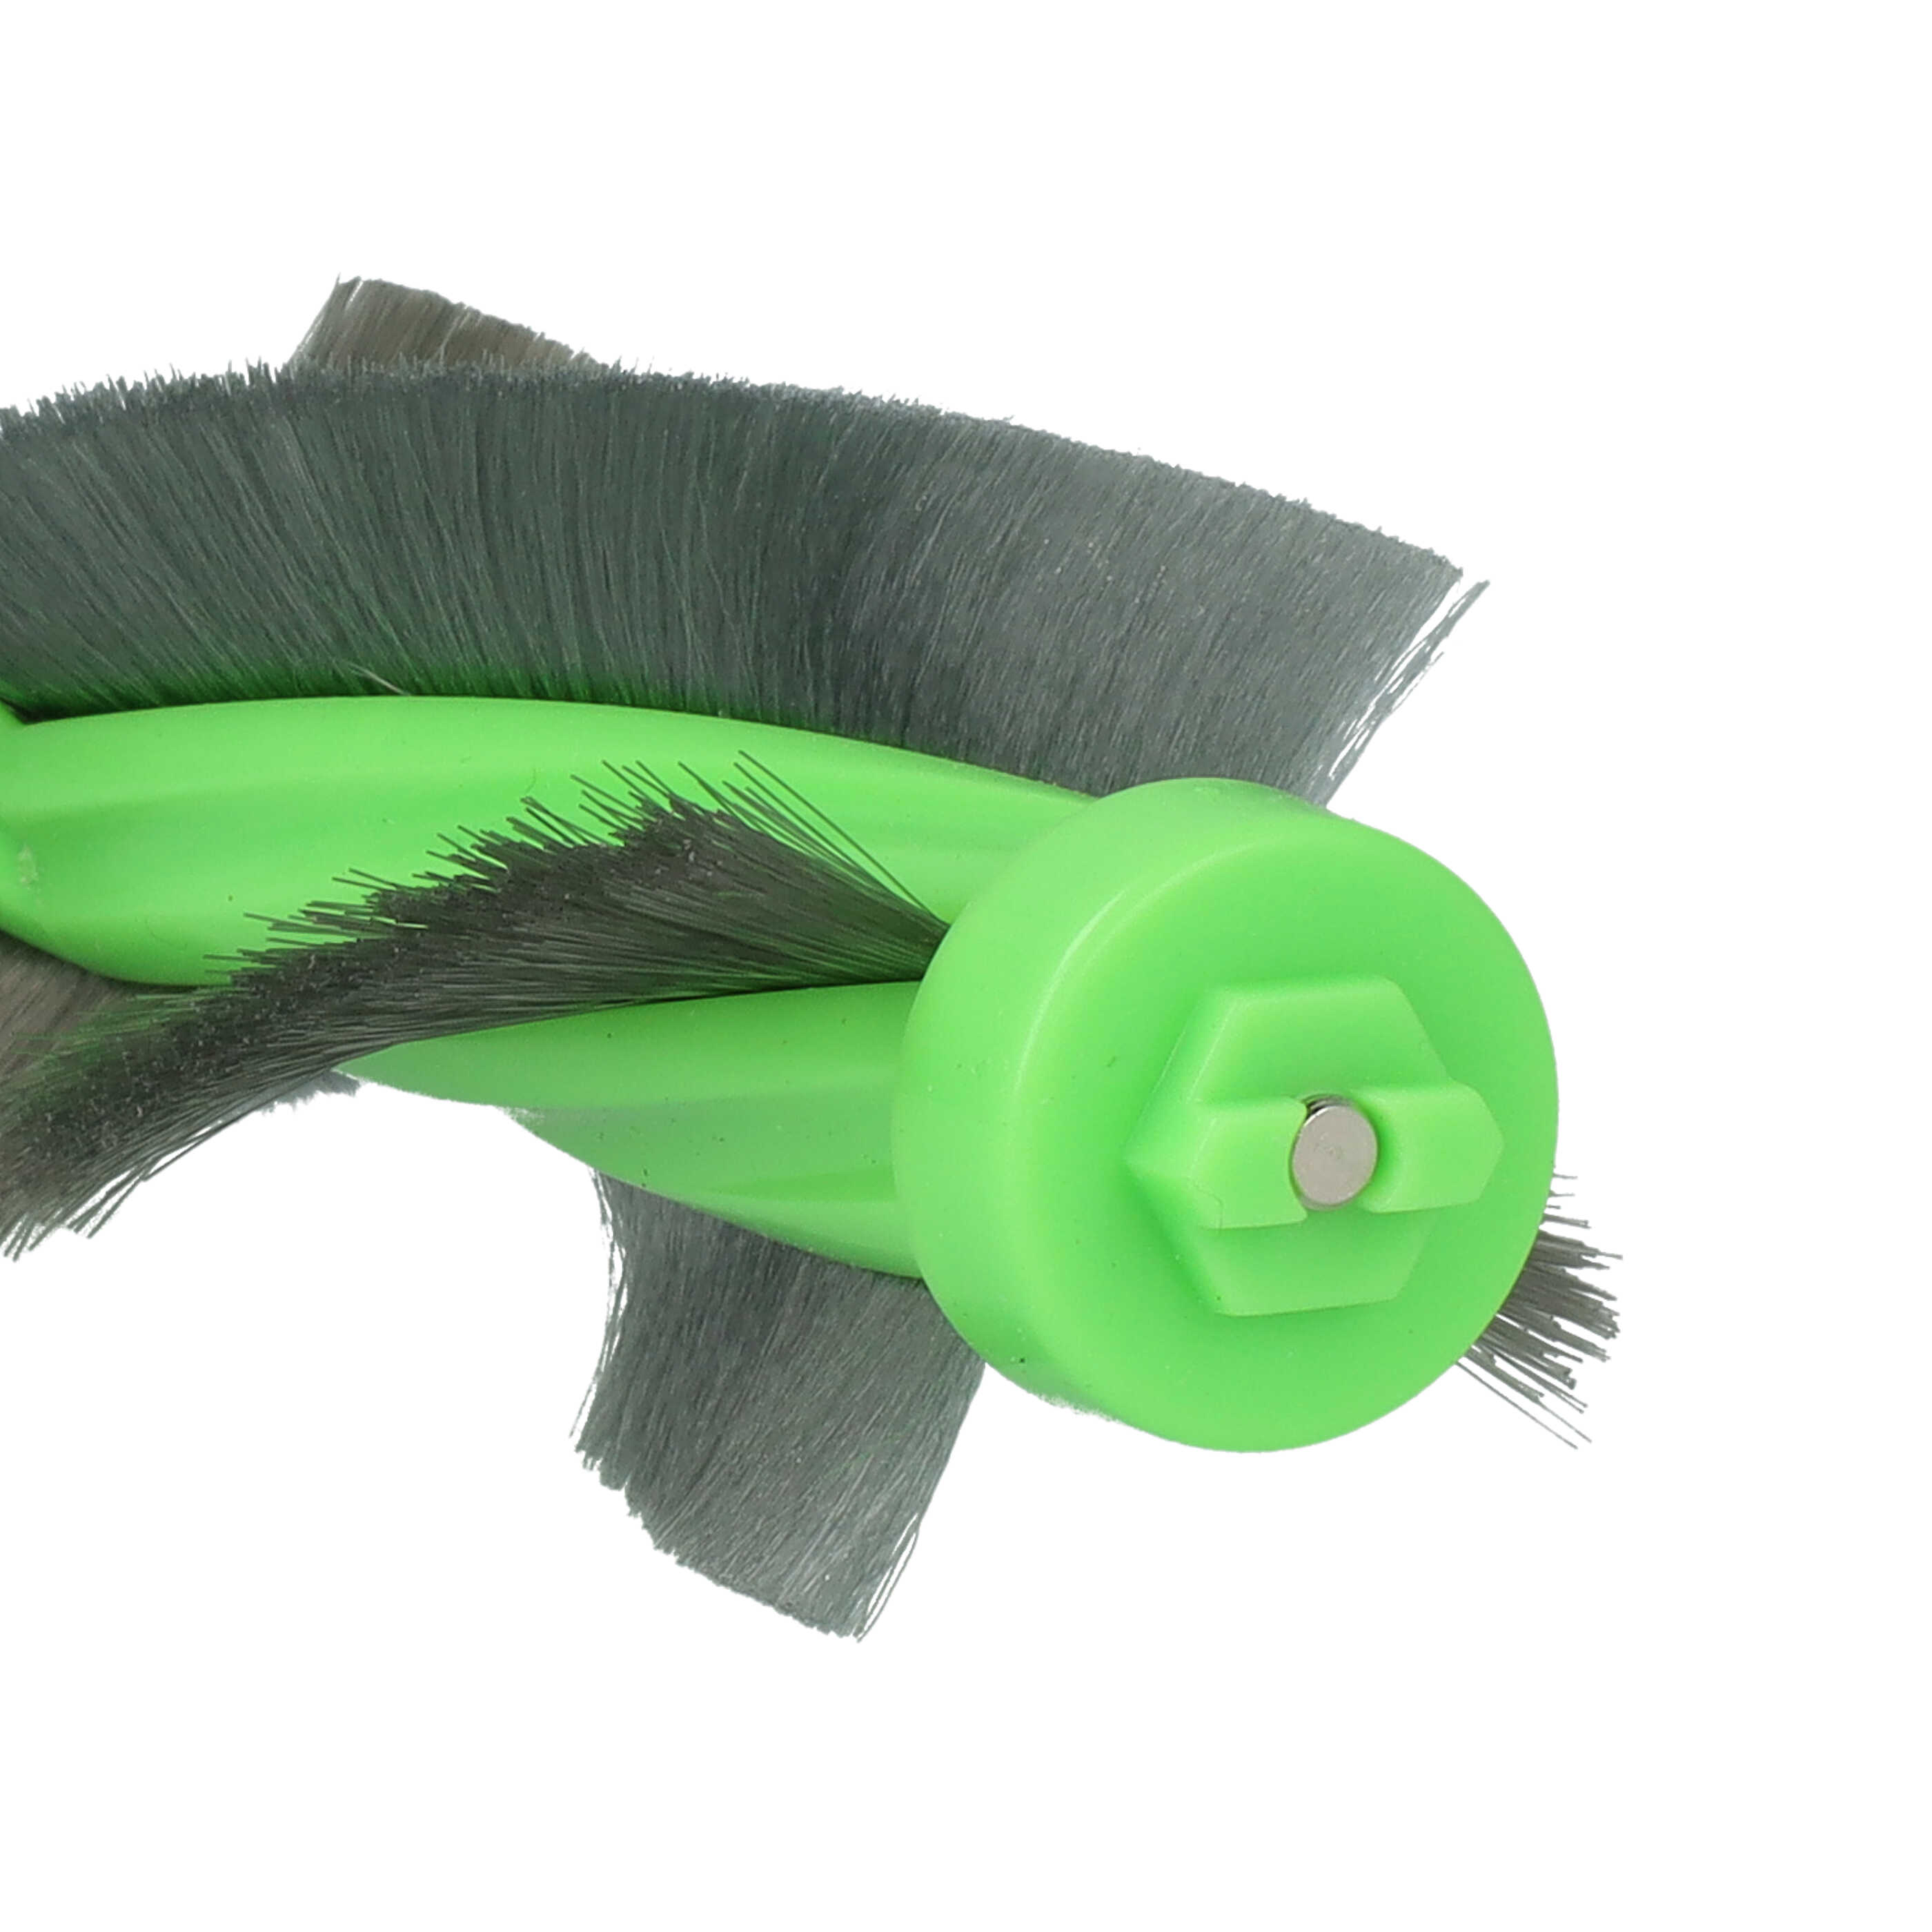 Cepillo redondo para robot aspirador iRobot Roomba E6 - cepillo principal, cepillo redondo